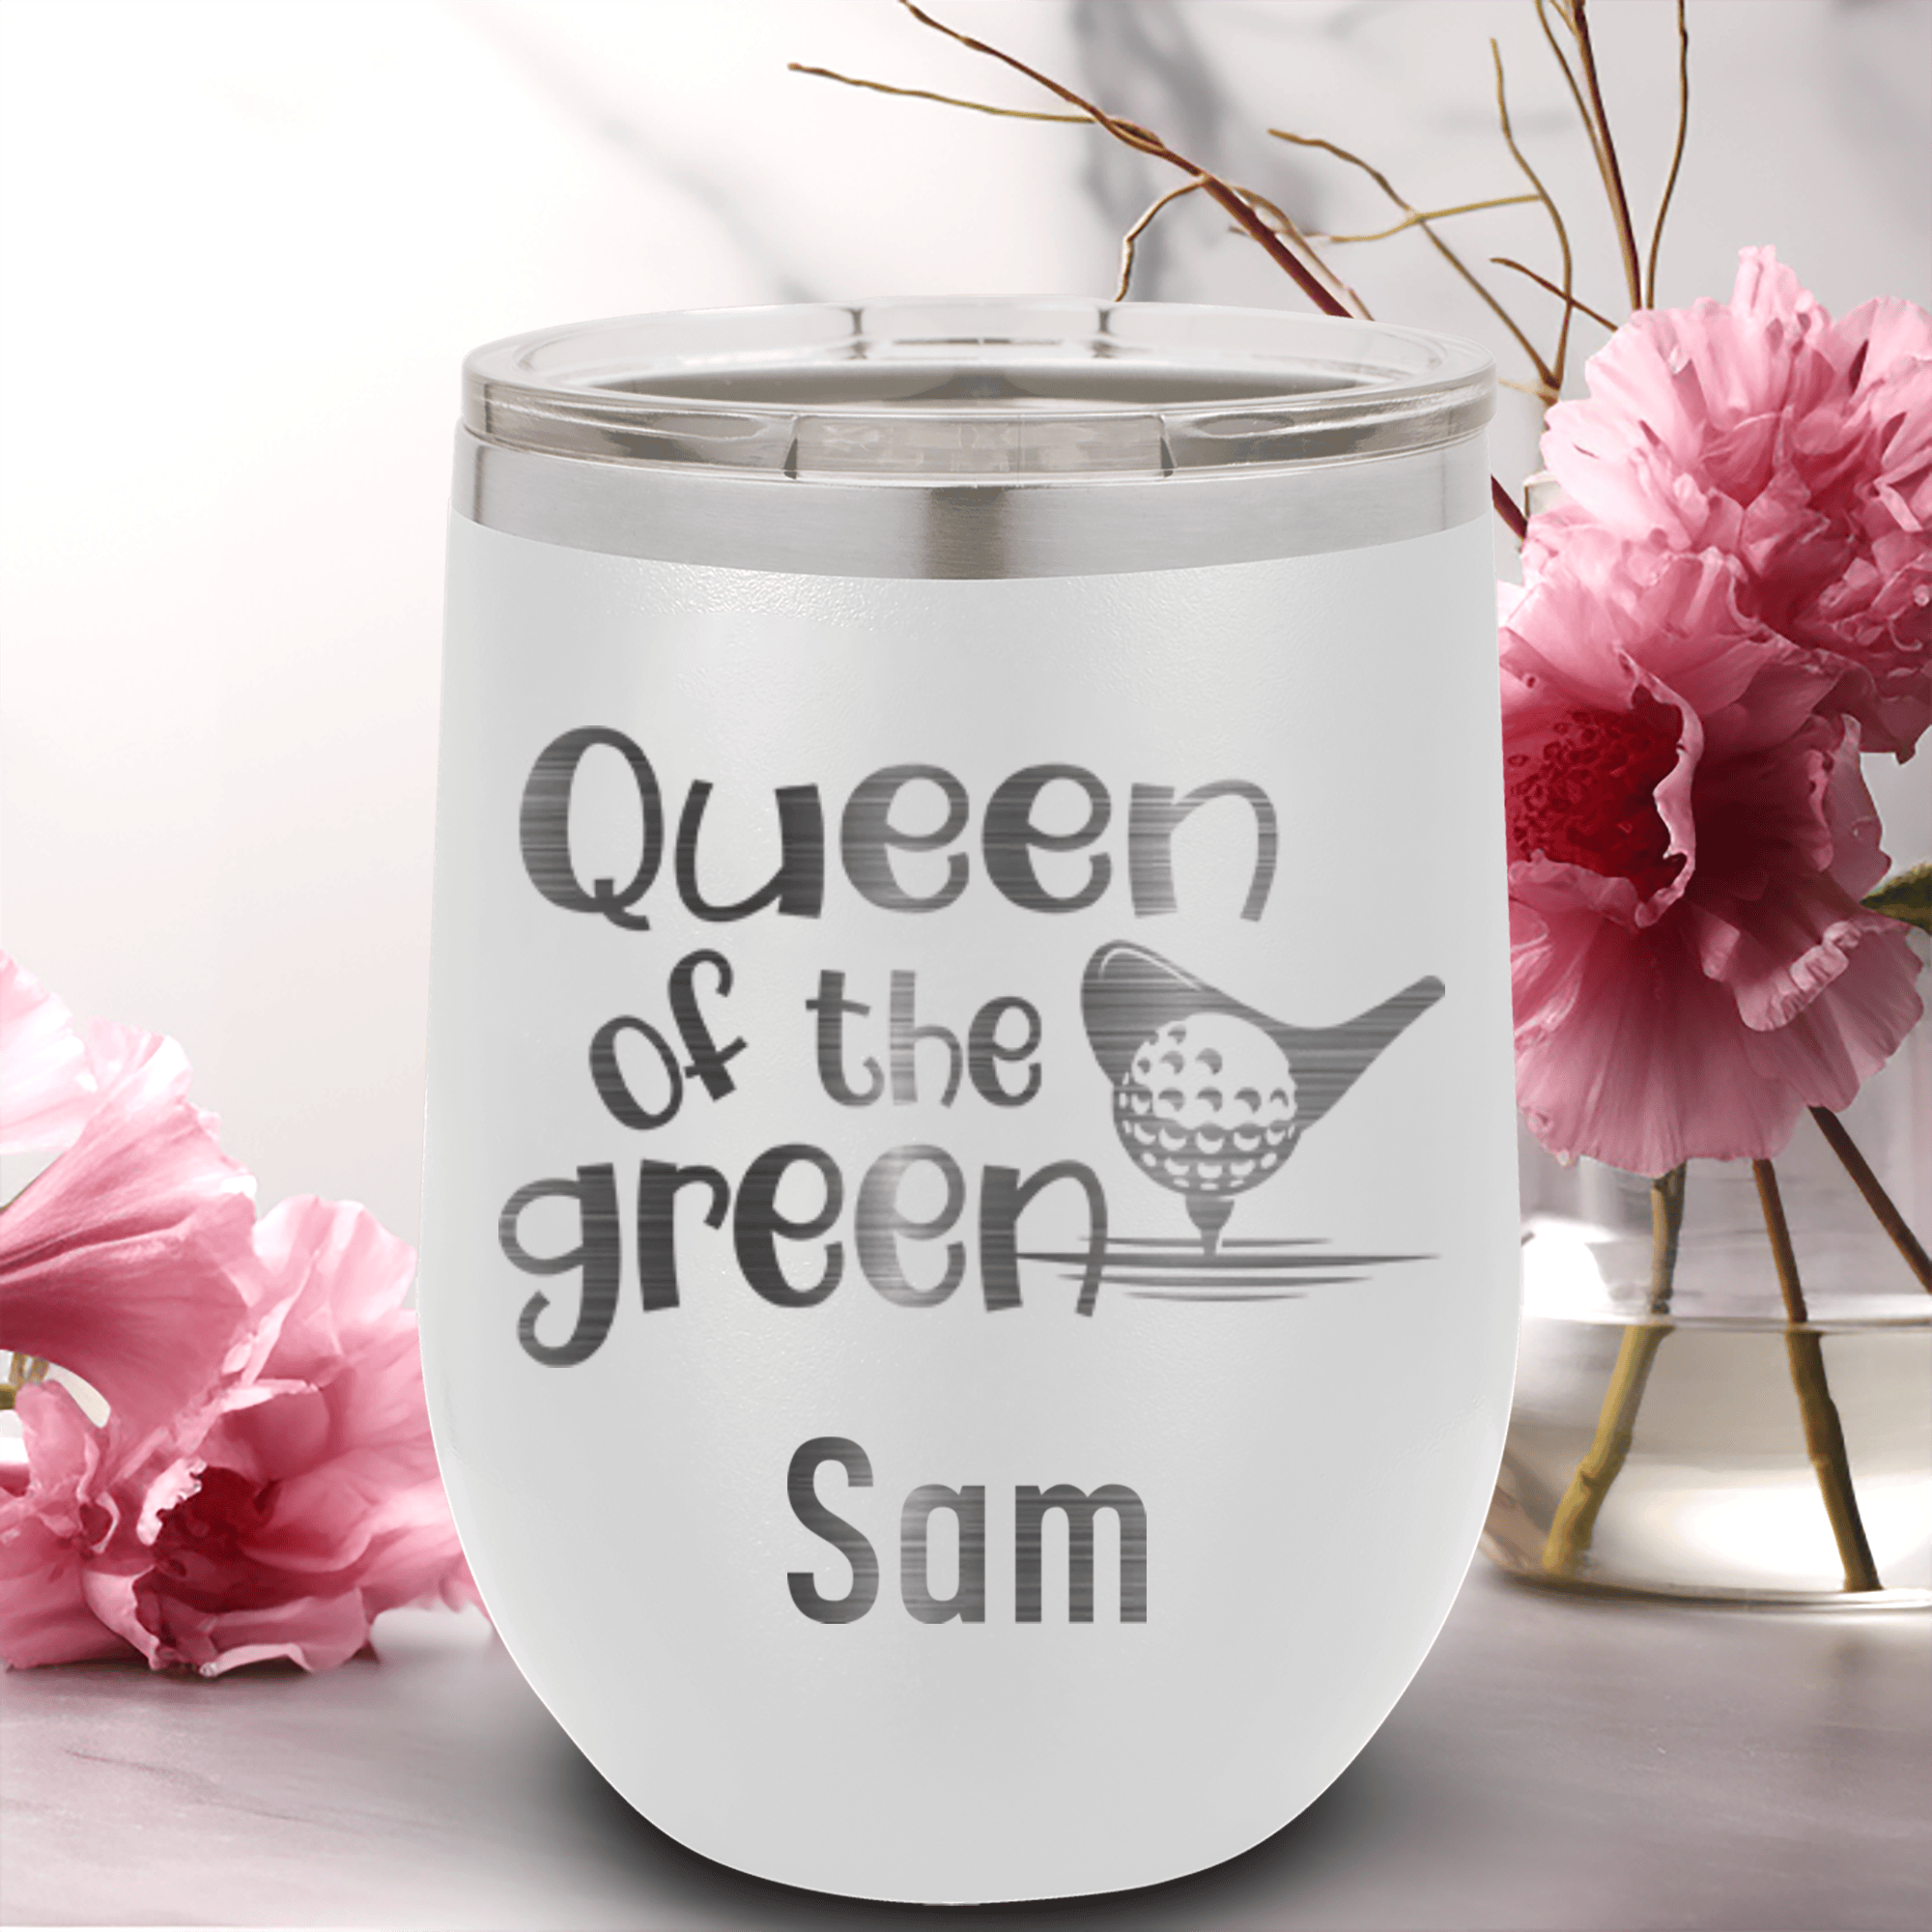 Queen Of The Green Wine Tumbler